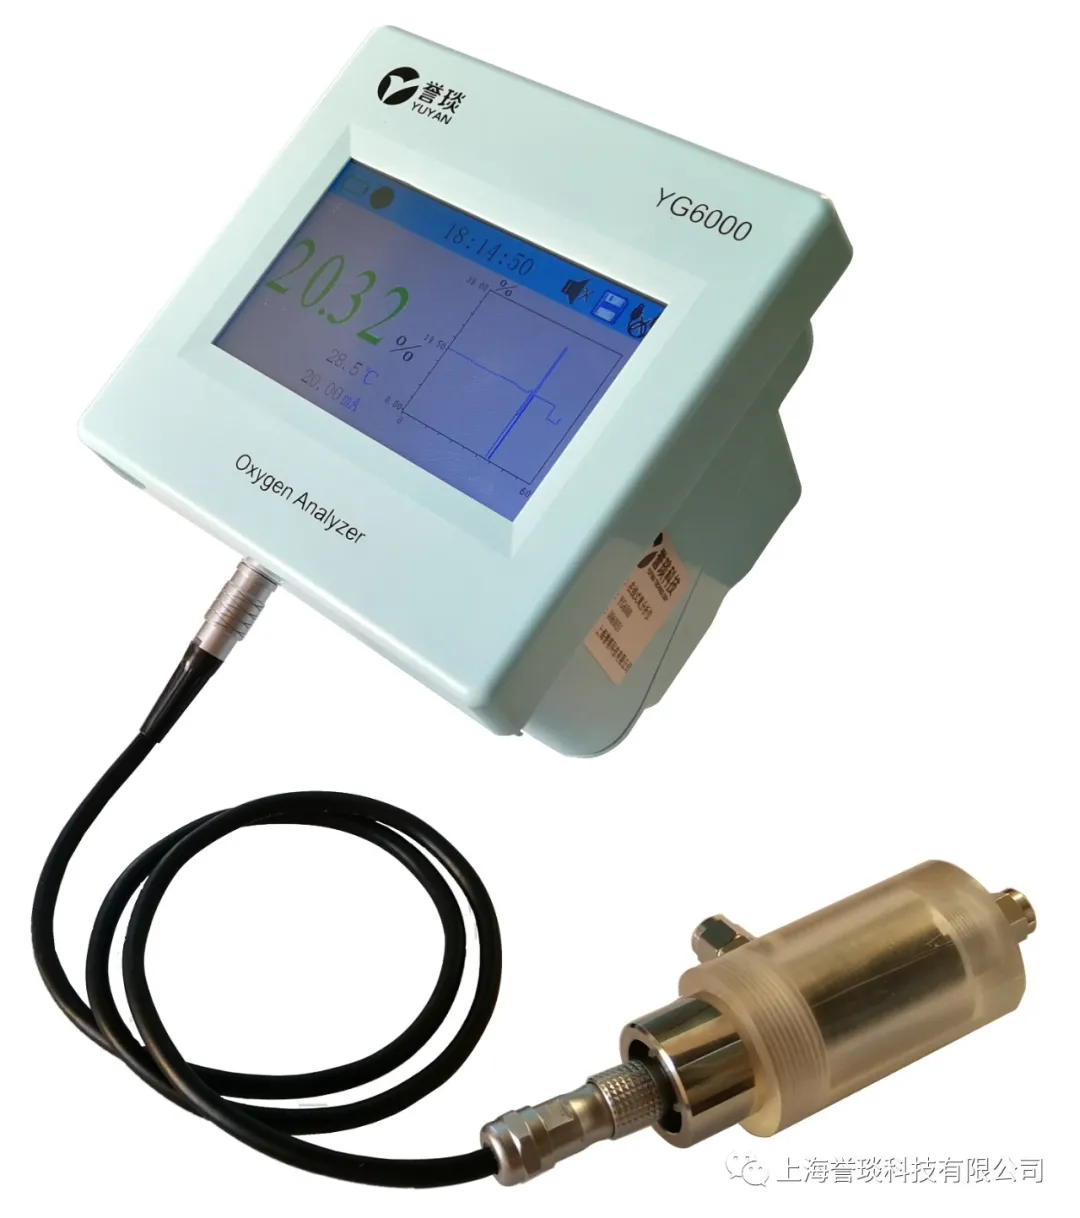 誉琰科技推出升级款在线氧分析仪